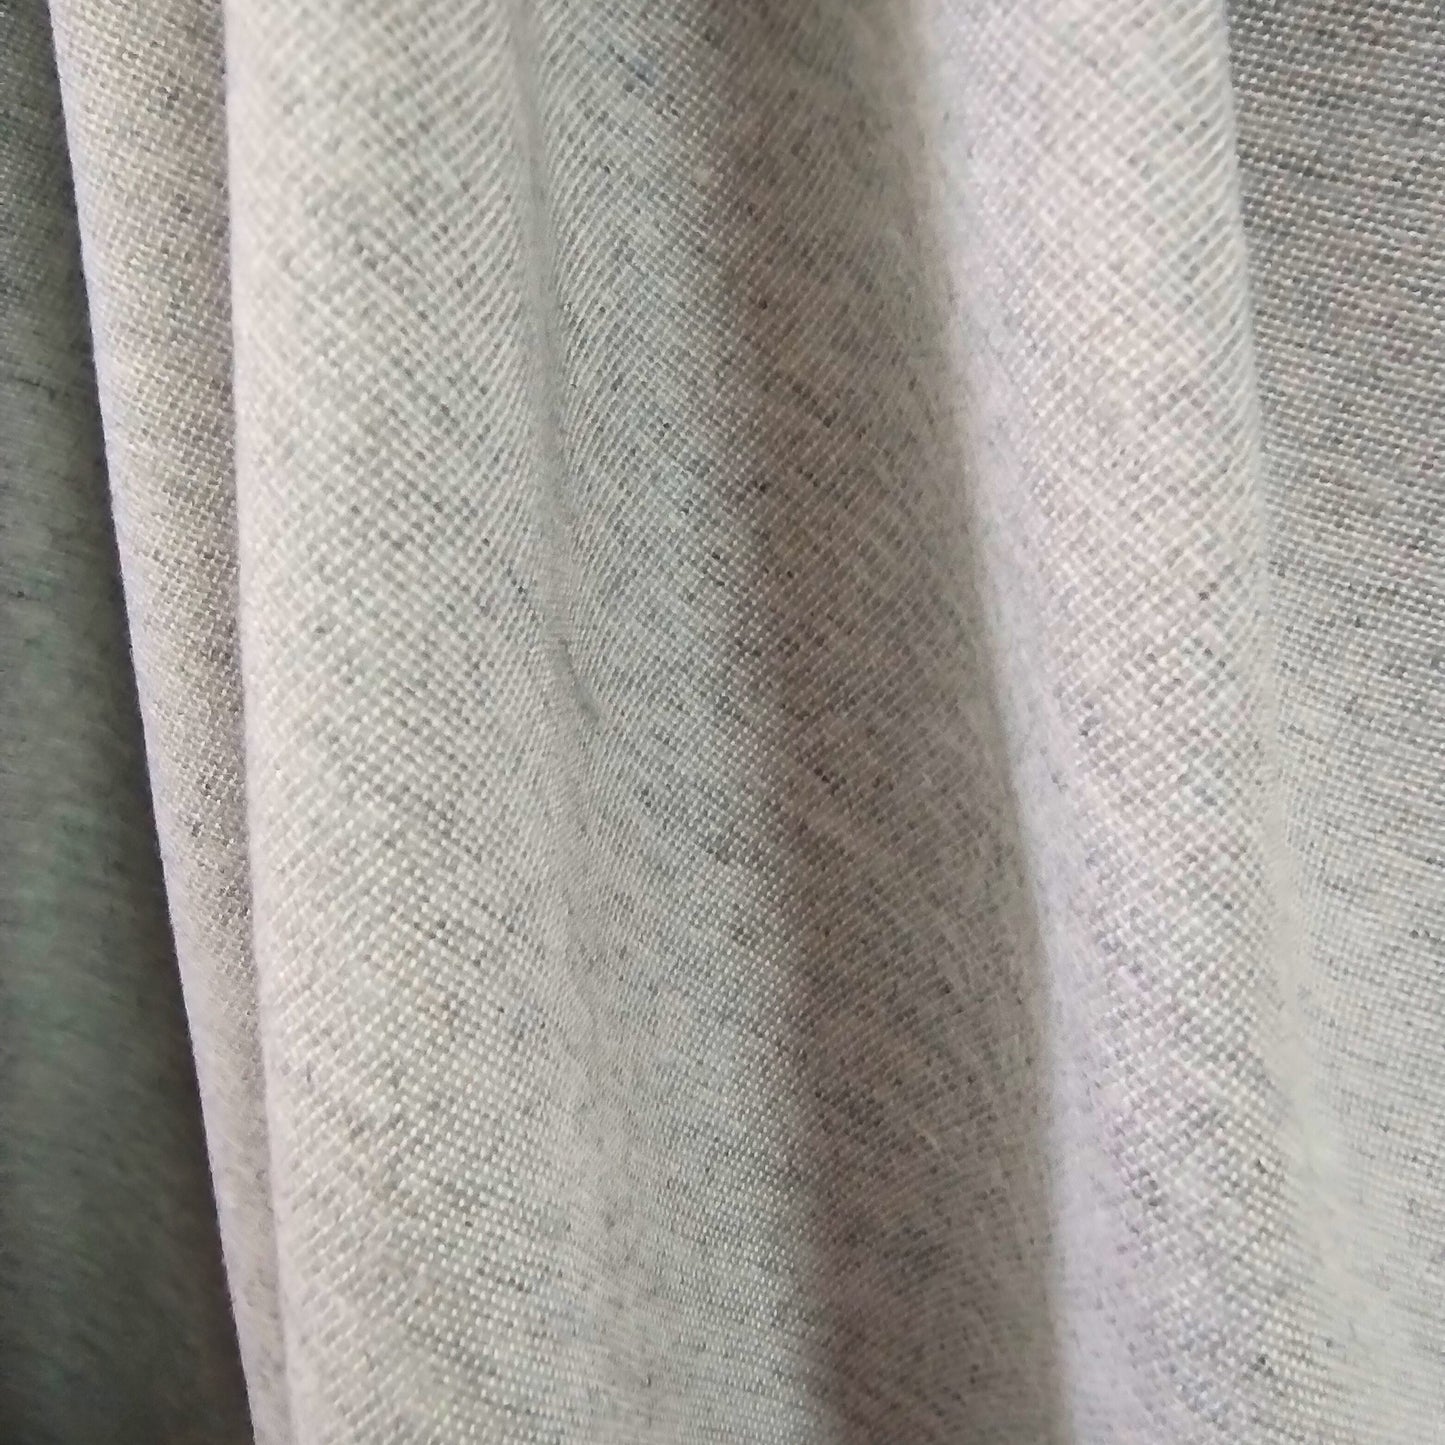 Tecido Rústico Cedro Cinza - Meneghel Indústria Têxtil